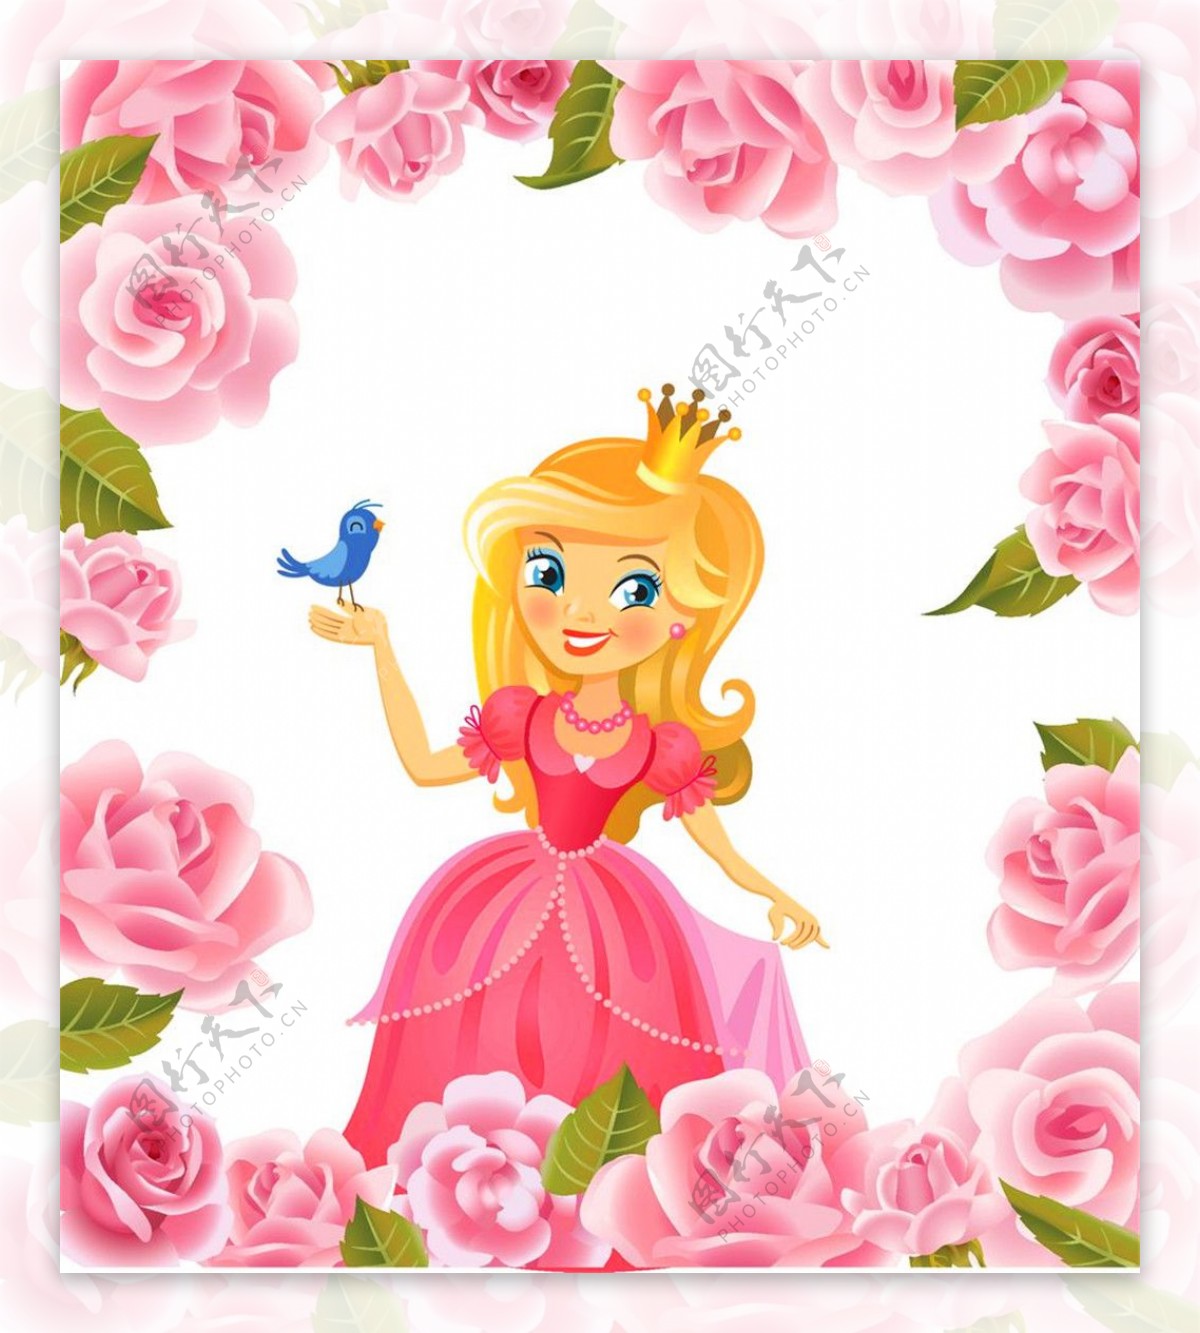 粉色玫瑰花和粉色公主图片